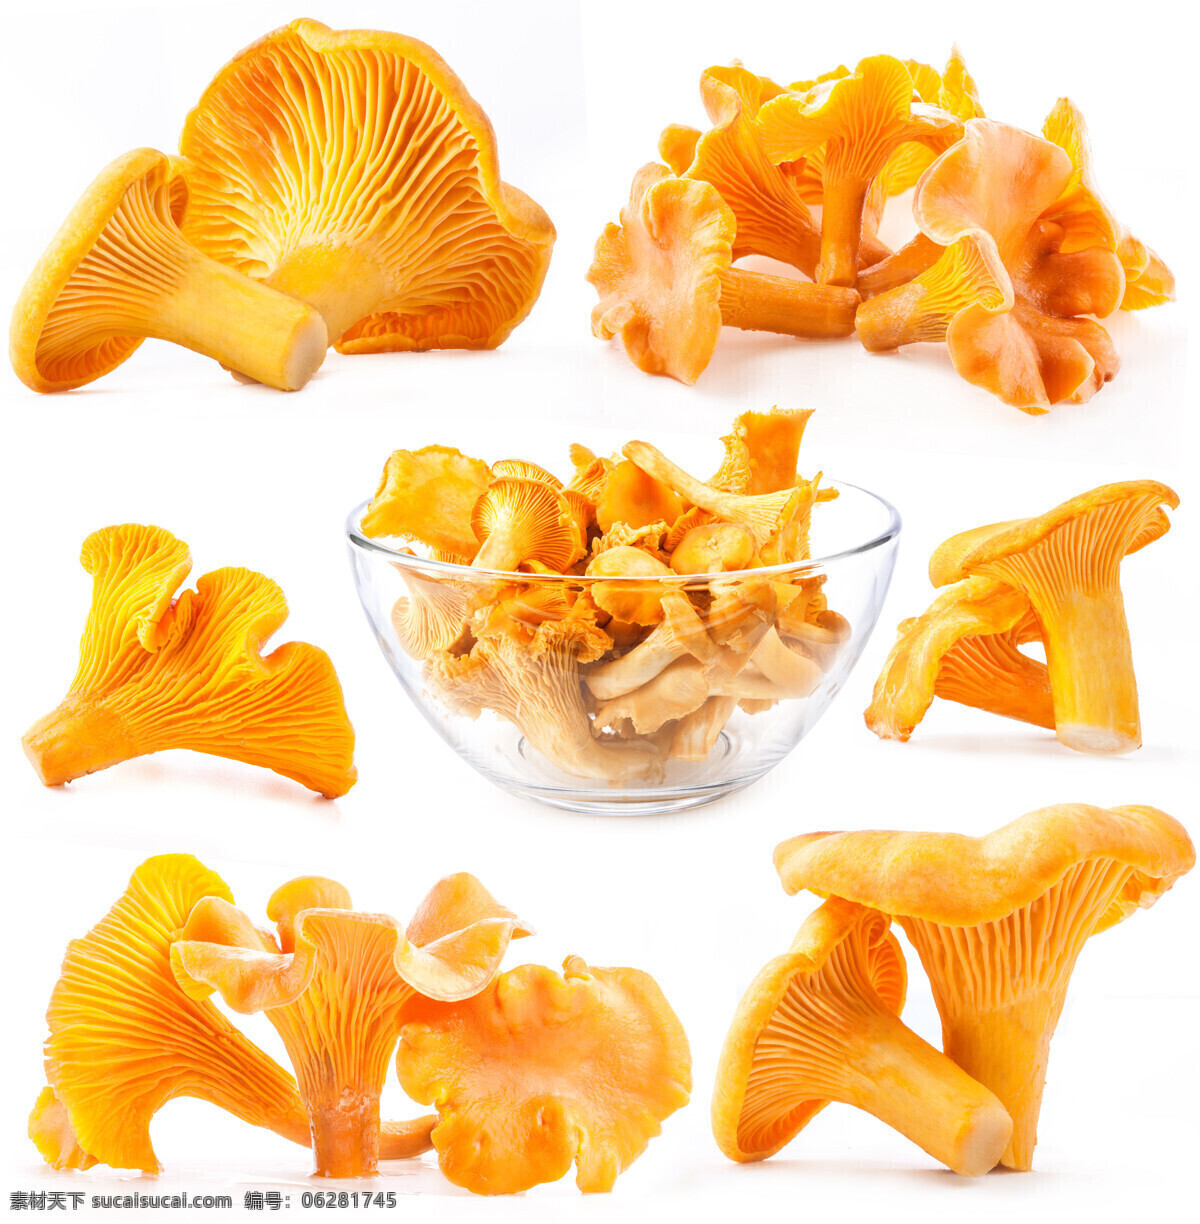 新鲜 蘑菇 食物 菌类 蘑菇图片 餐饮美食